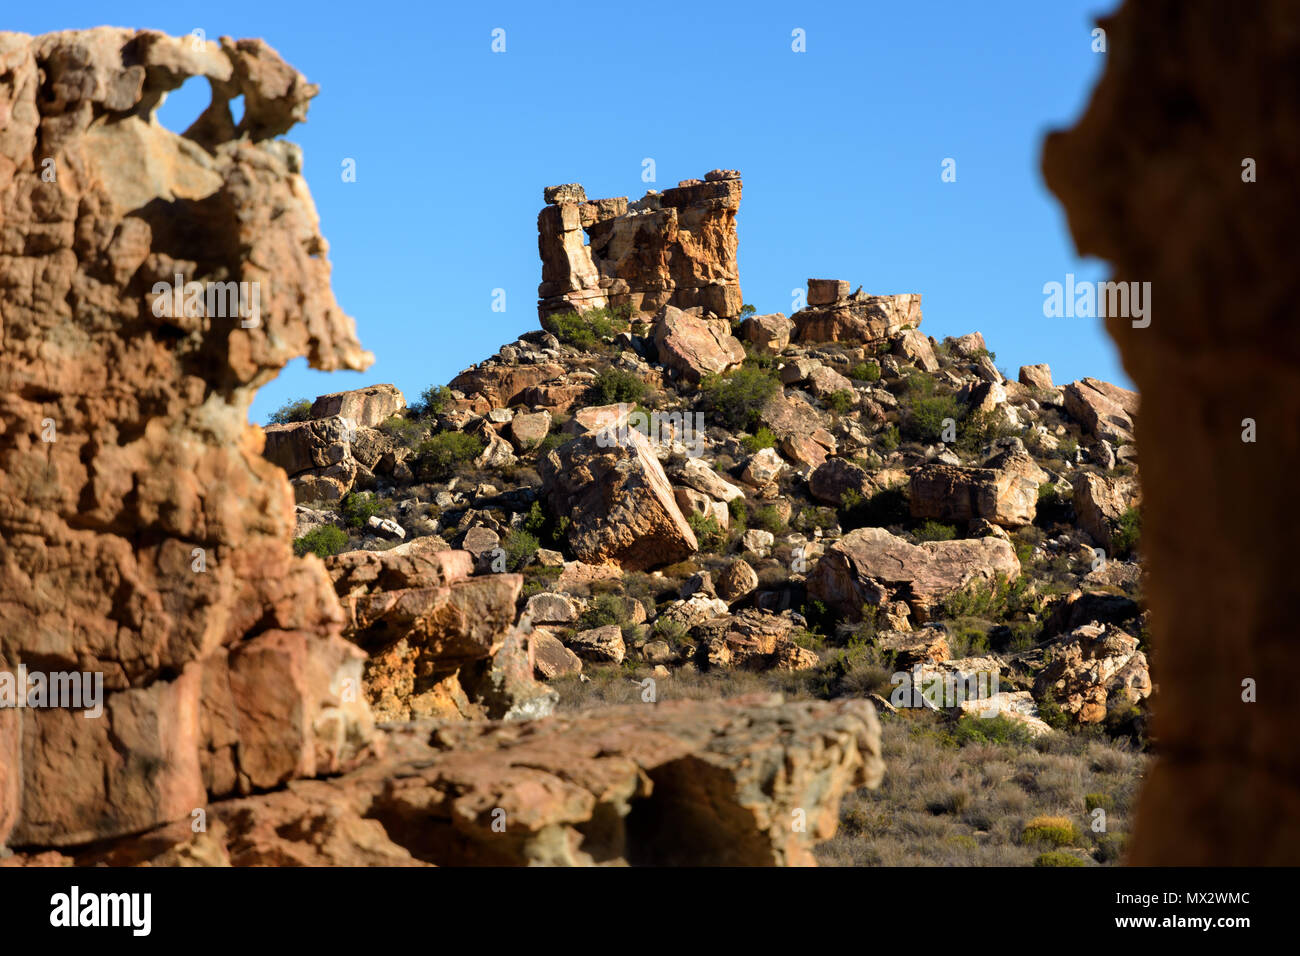 Truitjieskraal rock formations dans le domaine de l'Cederberg, Afrique du Sud Banque D'Images